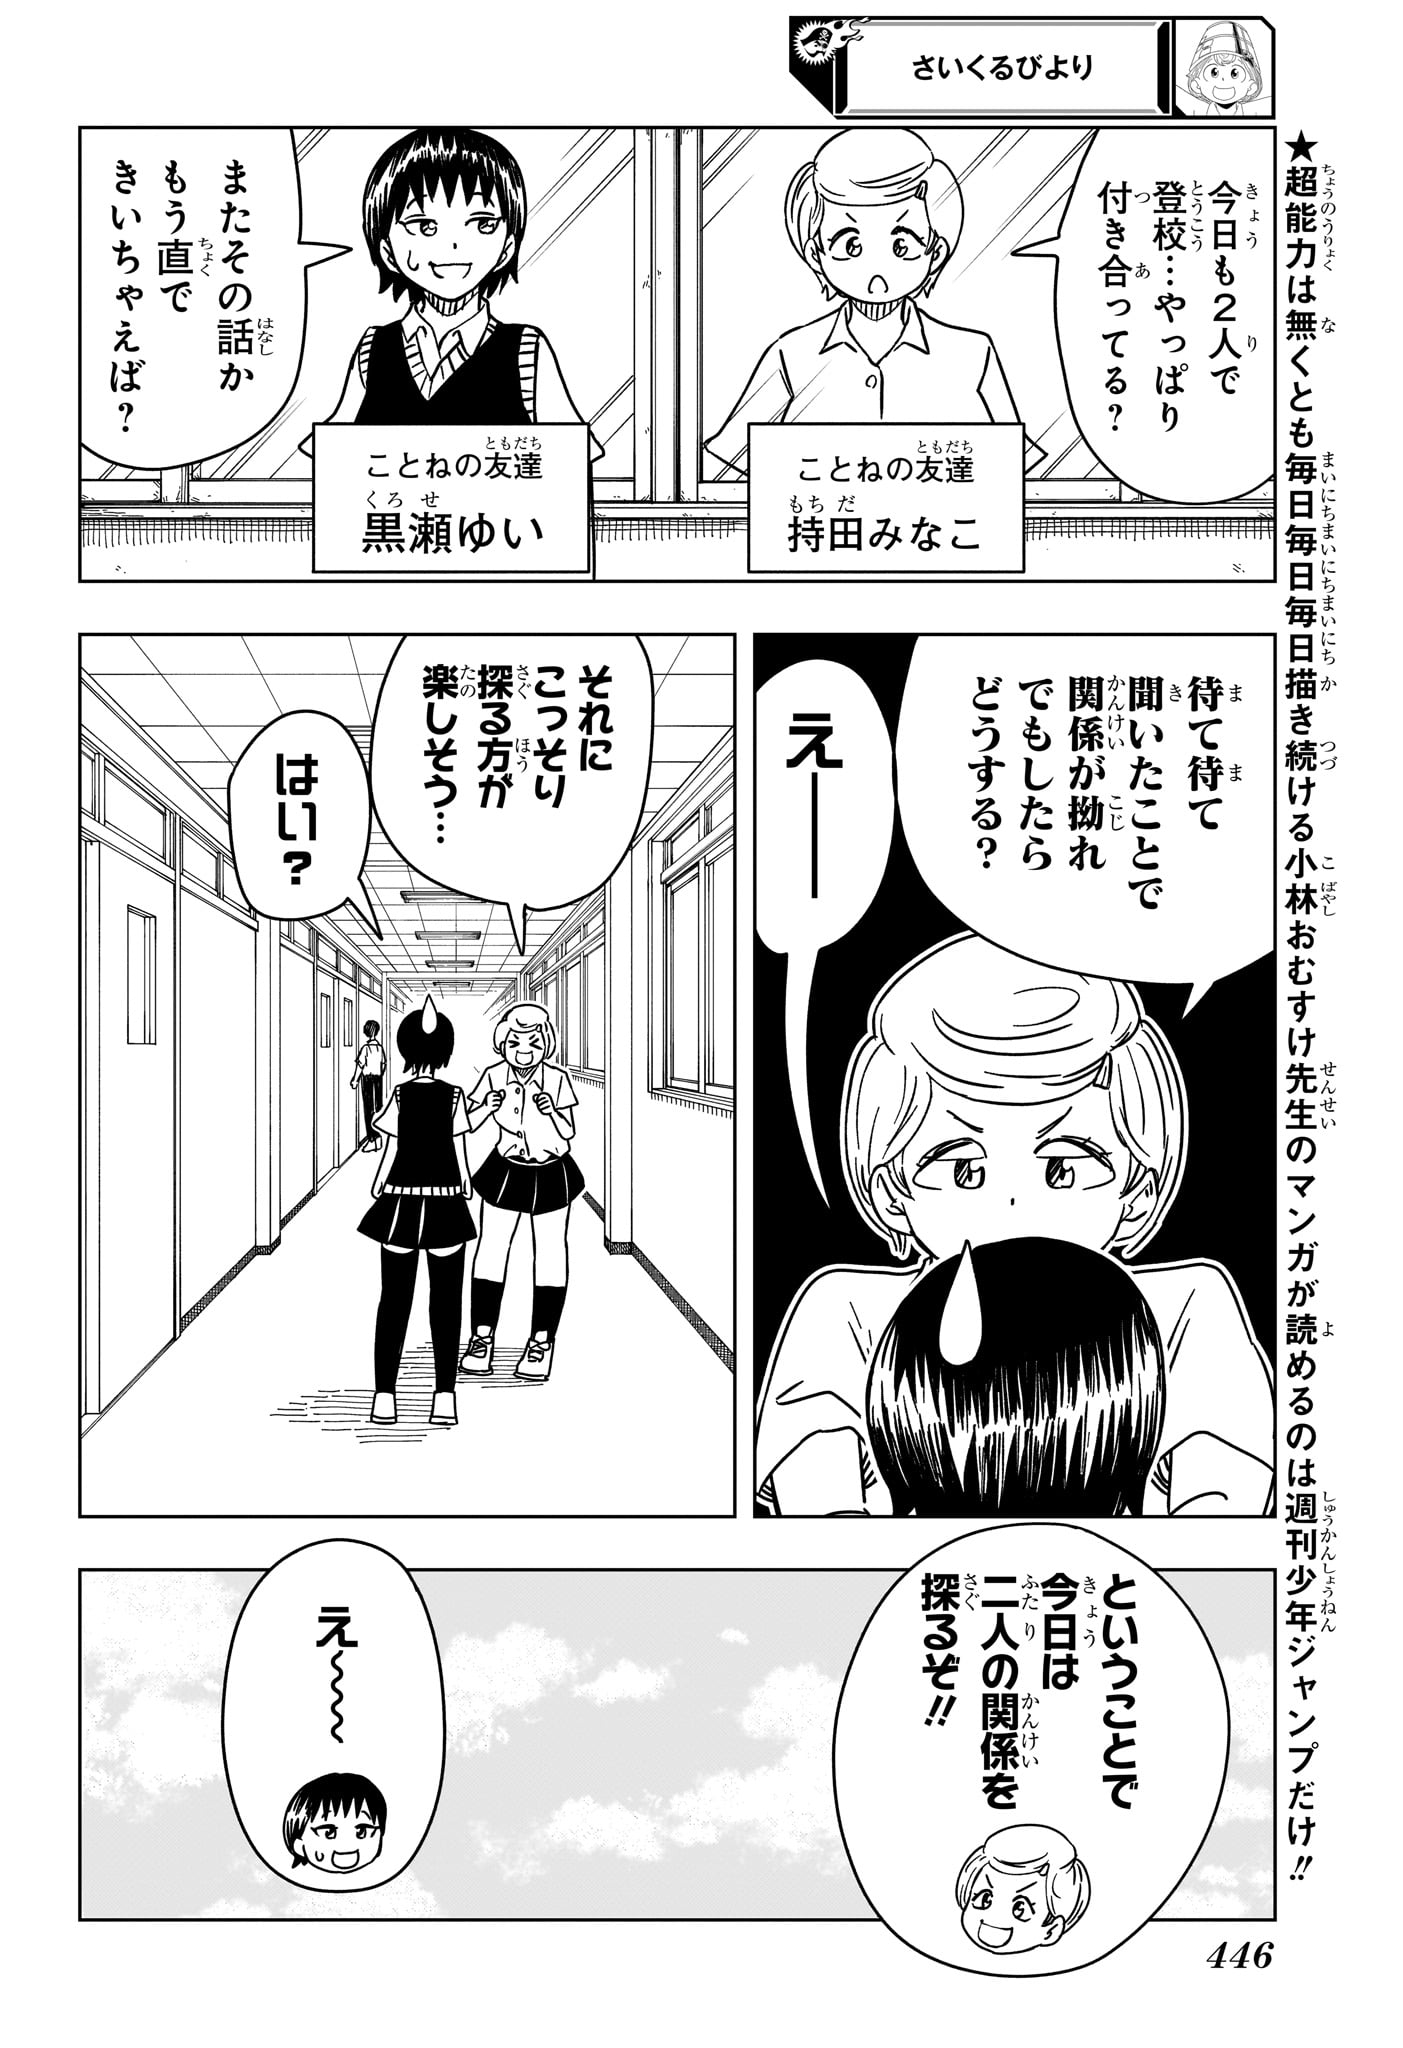 Saikuru Biyori - Chapter 11 - Page 2